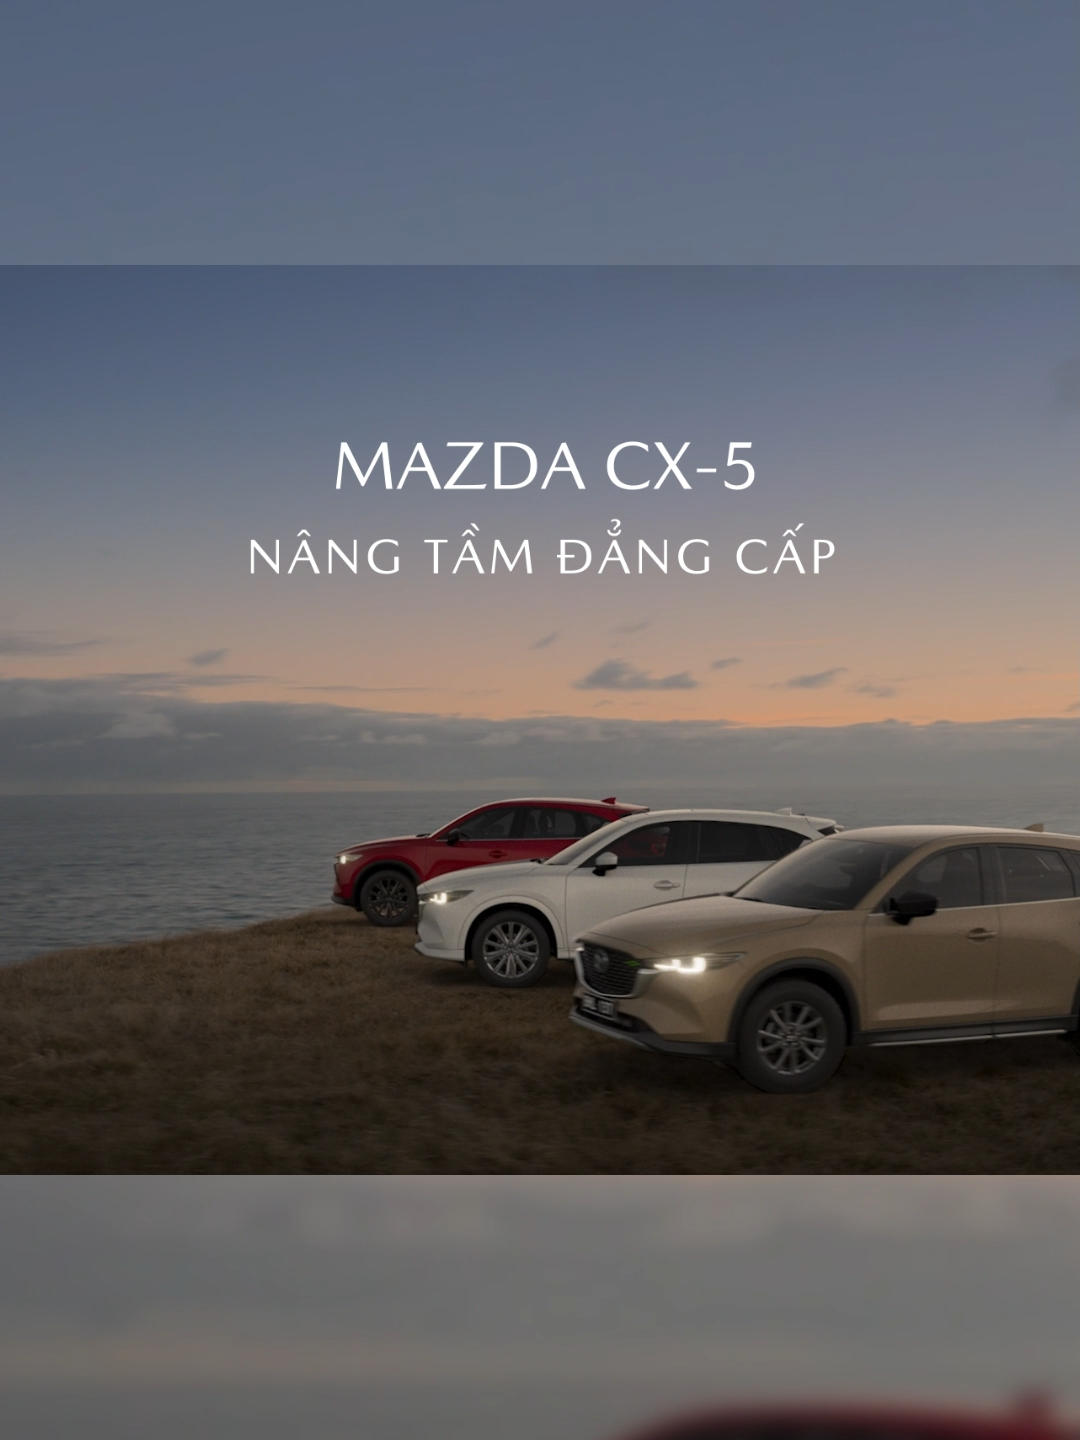 MAZDA CX-5 | NÂNG TẦM ĐẲNG CẤP Chinh phục những hành trình tuyệt vời cùng mẫu xe SUV thế hệ mới - Mazda CX-5 và trải nghiệm phong cách lái Jinba Ittai độc đáo của thương hiệu. ✅ Ngôn ngữ thiết kế mỹ thuật Kodo Artful Design lay động mọi giác quan; ✅ Khoang nội thất tiện nghi và sang trọng; ✅ Khả năng vận hành mạnh mẽ với hệ thống công nghệ SkyActiv; Mazda CX-5 mang lại cảm giác lái đầy hứng khởi trên mỗi hành trình. #Mazda #MazdaVietNam #MazdaCX5 #CX5